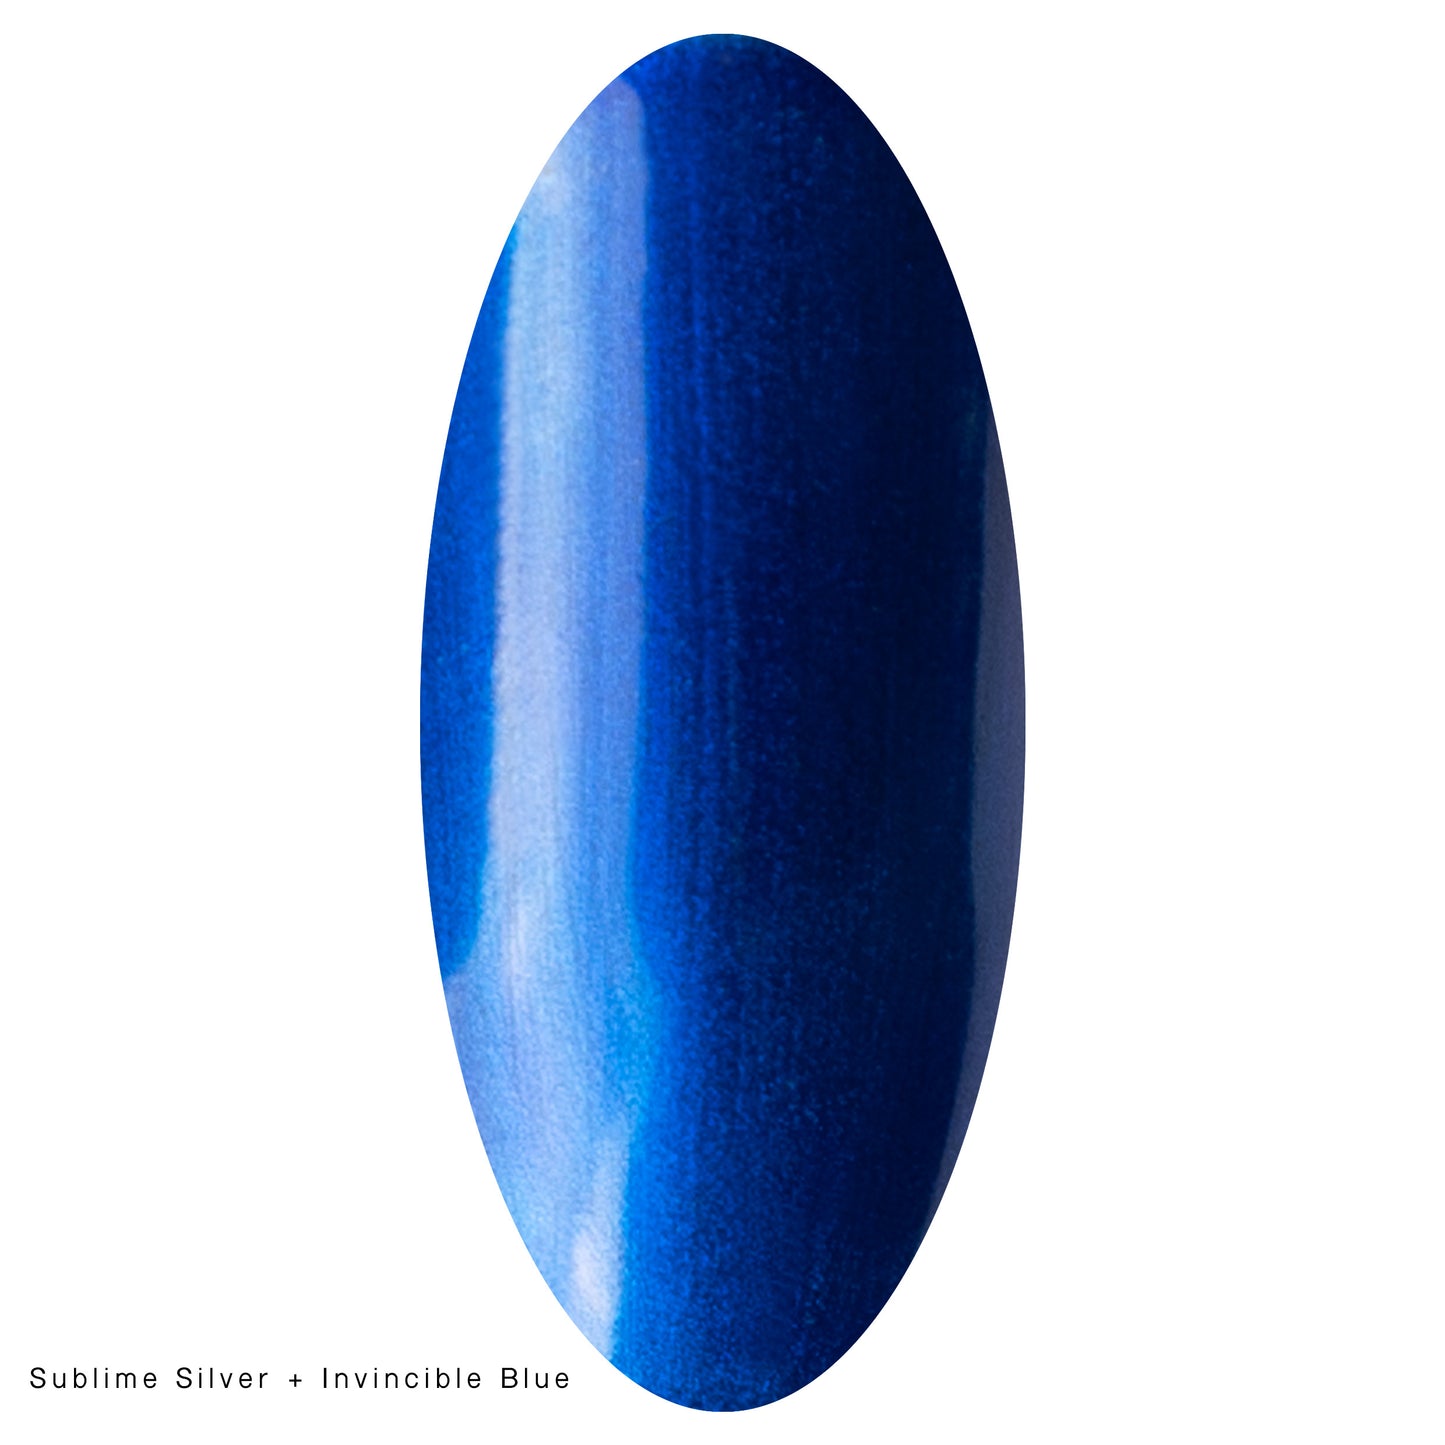 LAKKIE Gellak Invincible Blue. Blauwe Titanium gellak. Voor een prachtige metallic effect op jouw nagels. 